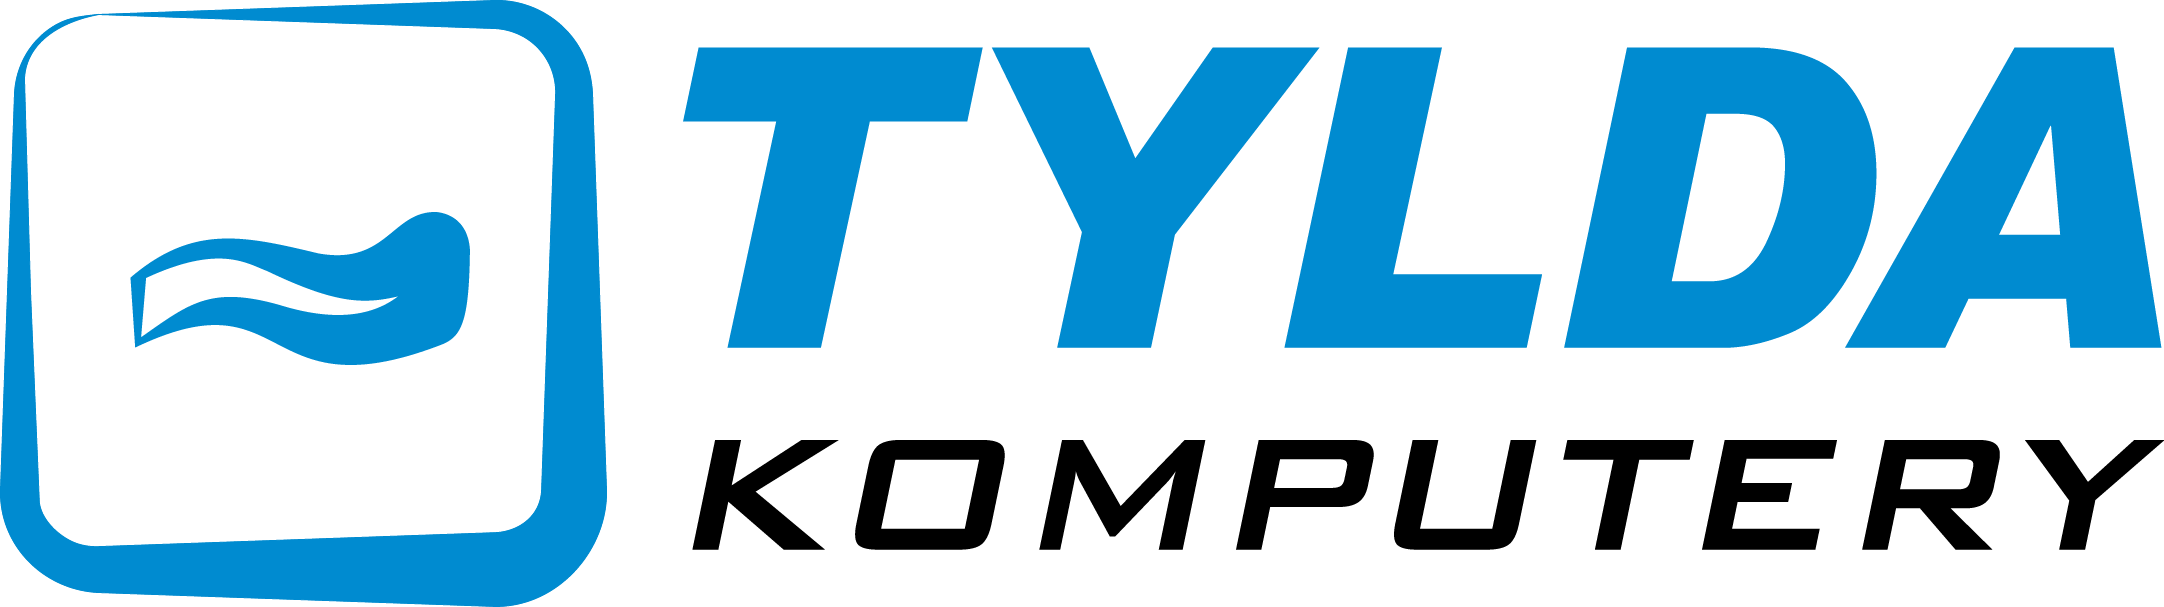 TYLDA Komputery – sklep komputerowy, serwis, IT